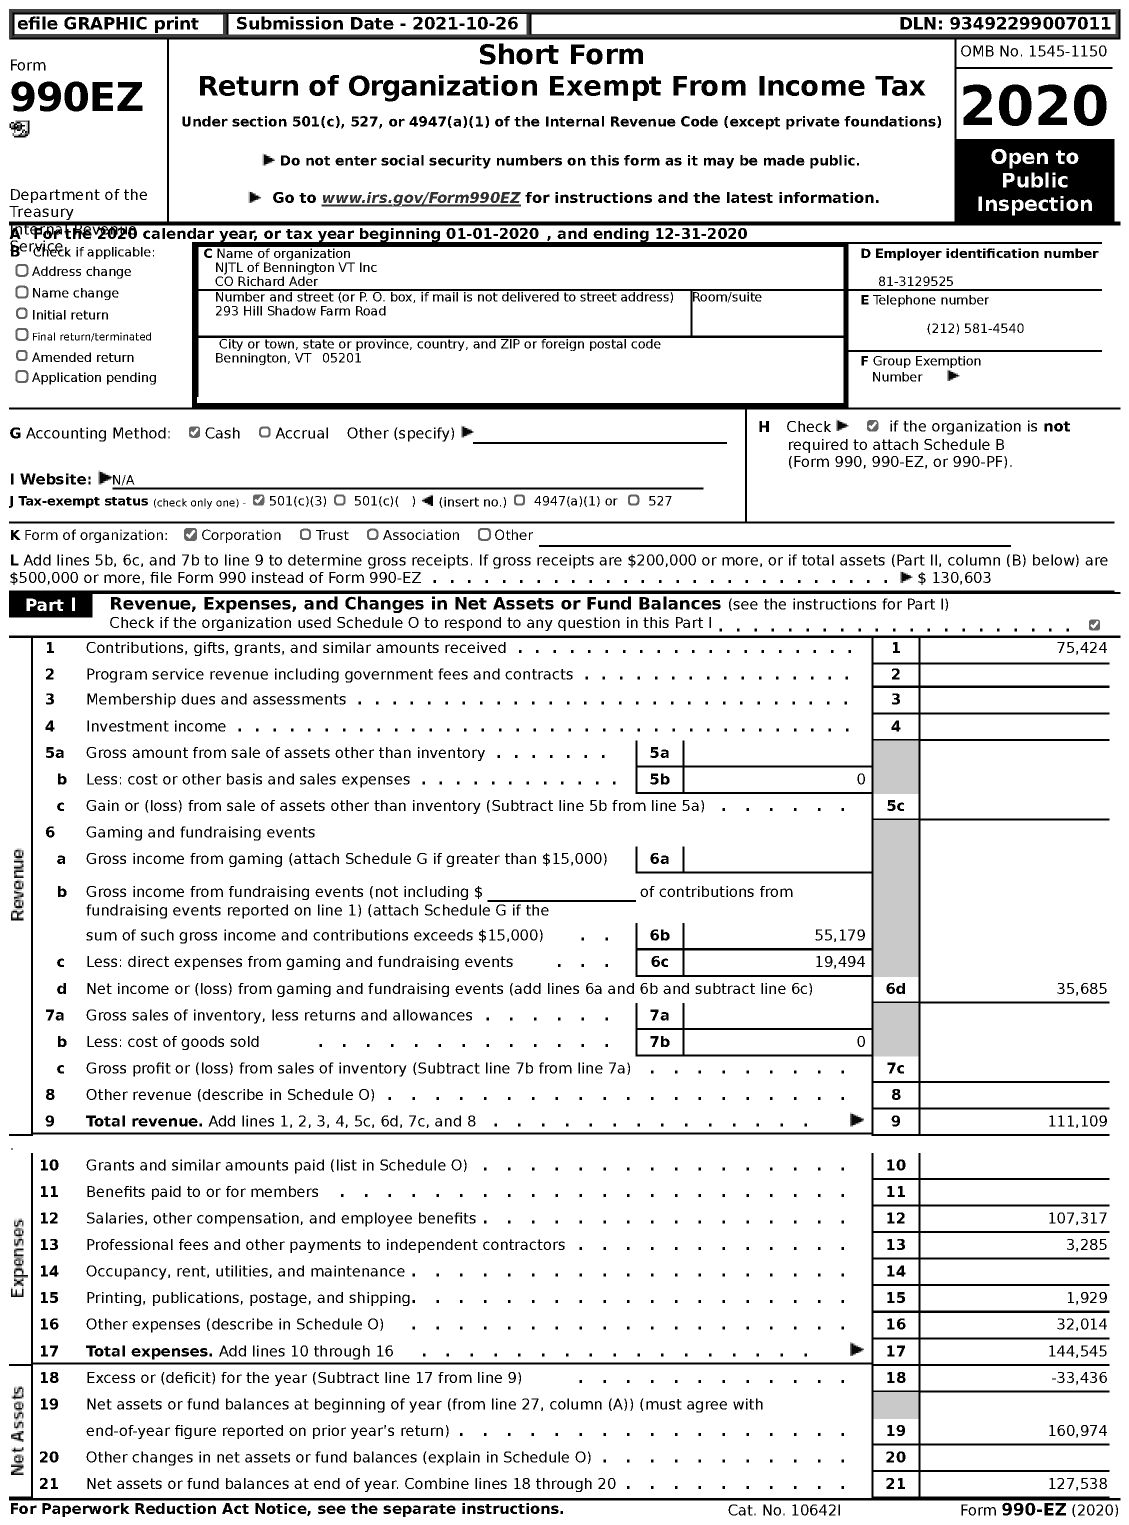 Image of first page of 2020 Form 990EZ for NJTL of Bennington VT